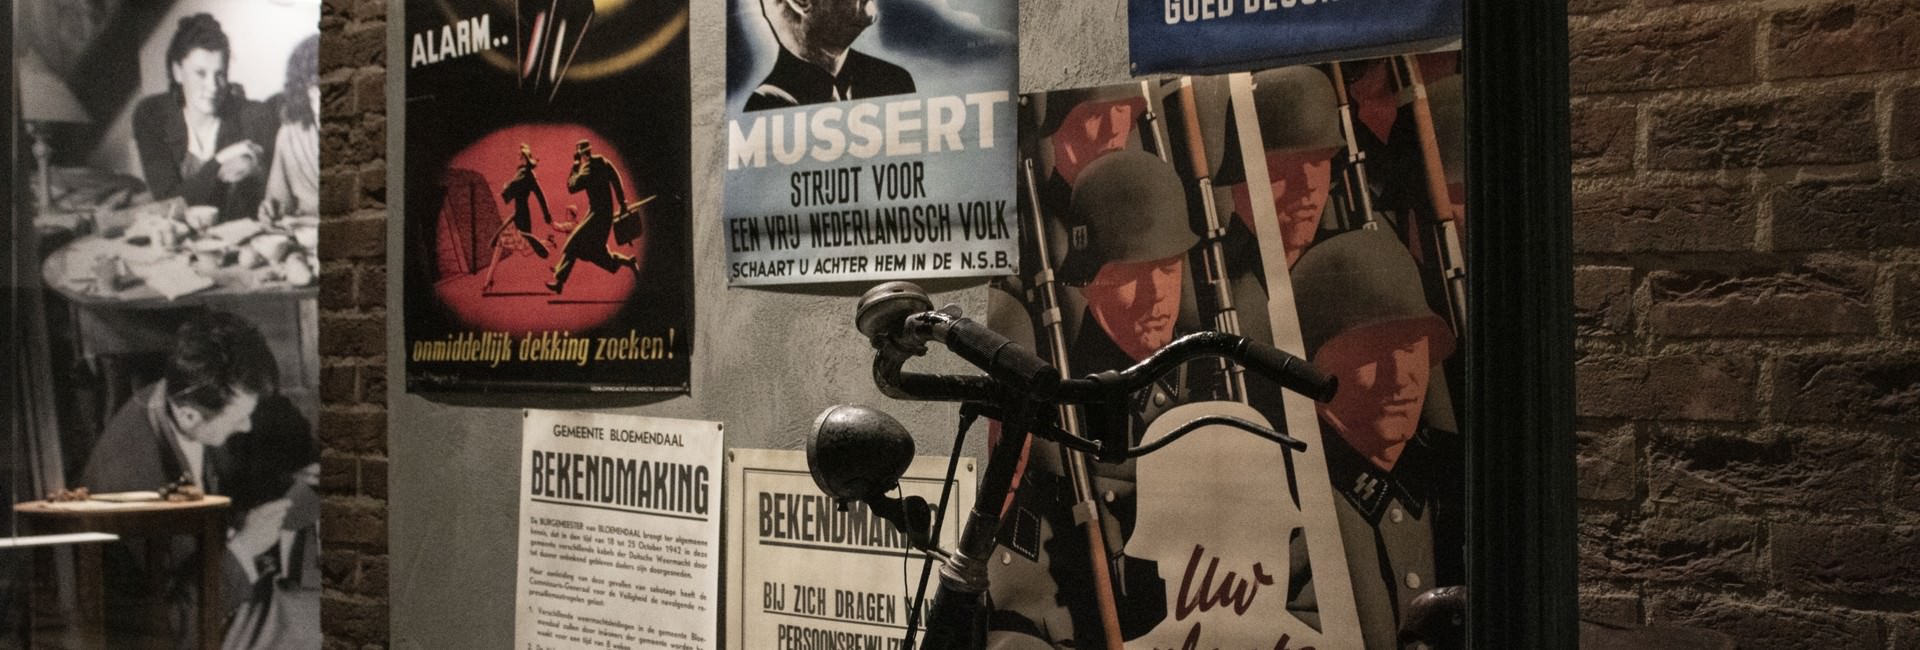 oorlogsmuseum - info over museumbezoek